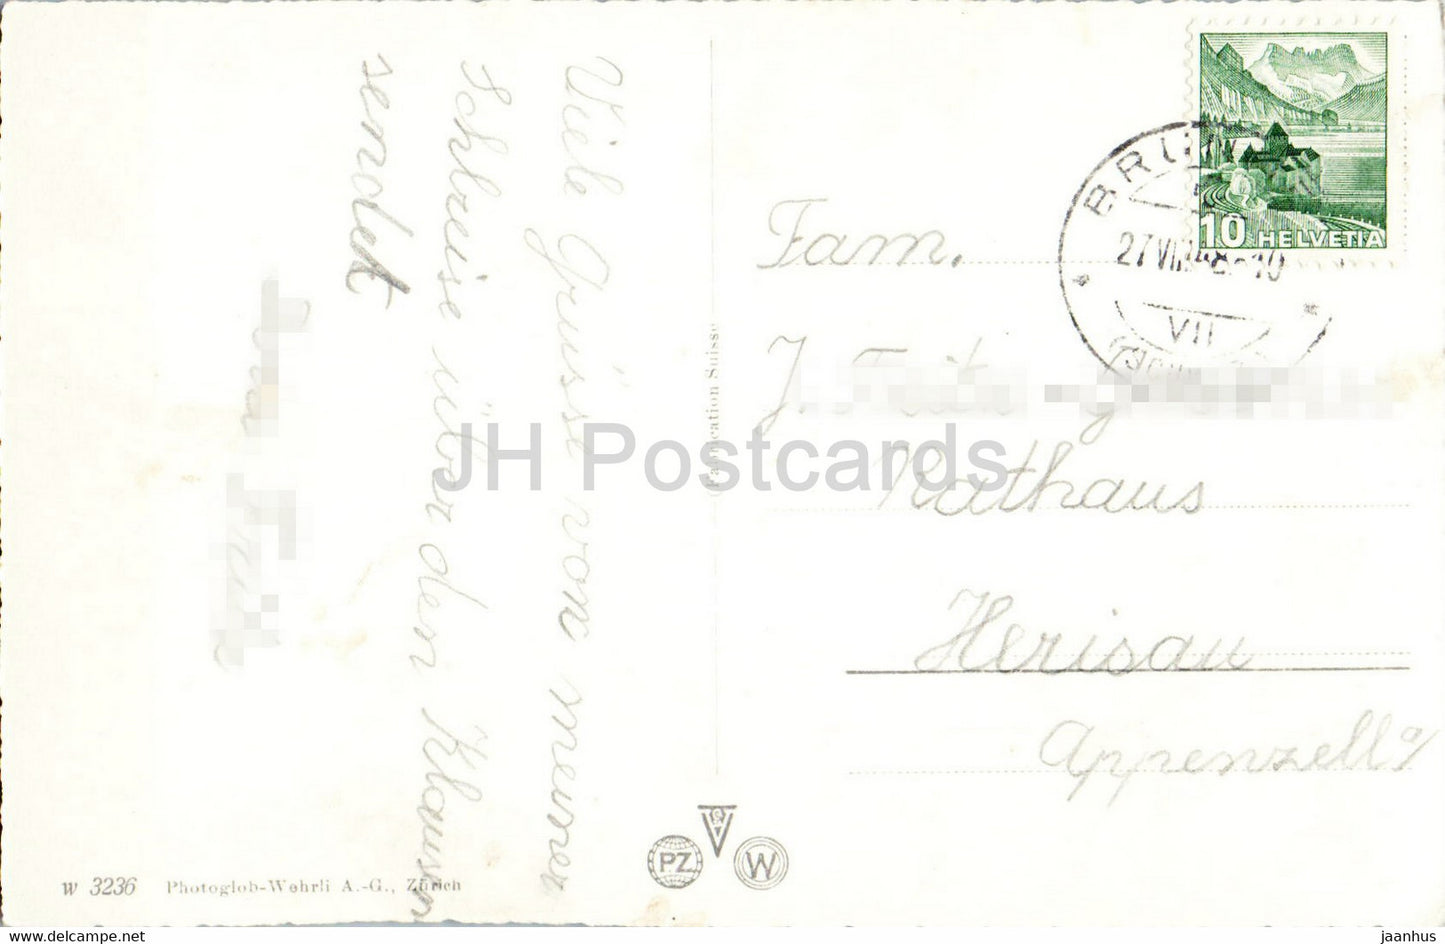 Altdorf - Dorfplatz mit Telldenkmal - Denkmal - 3236 - 1948 - alte Postkarte - Schweiz - gebraucht